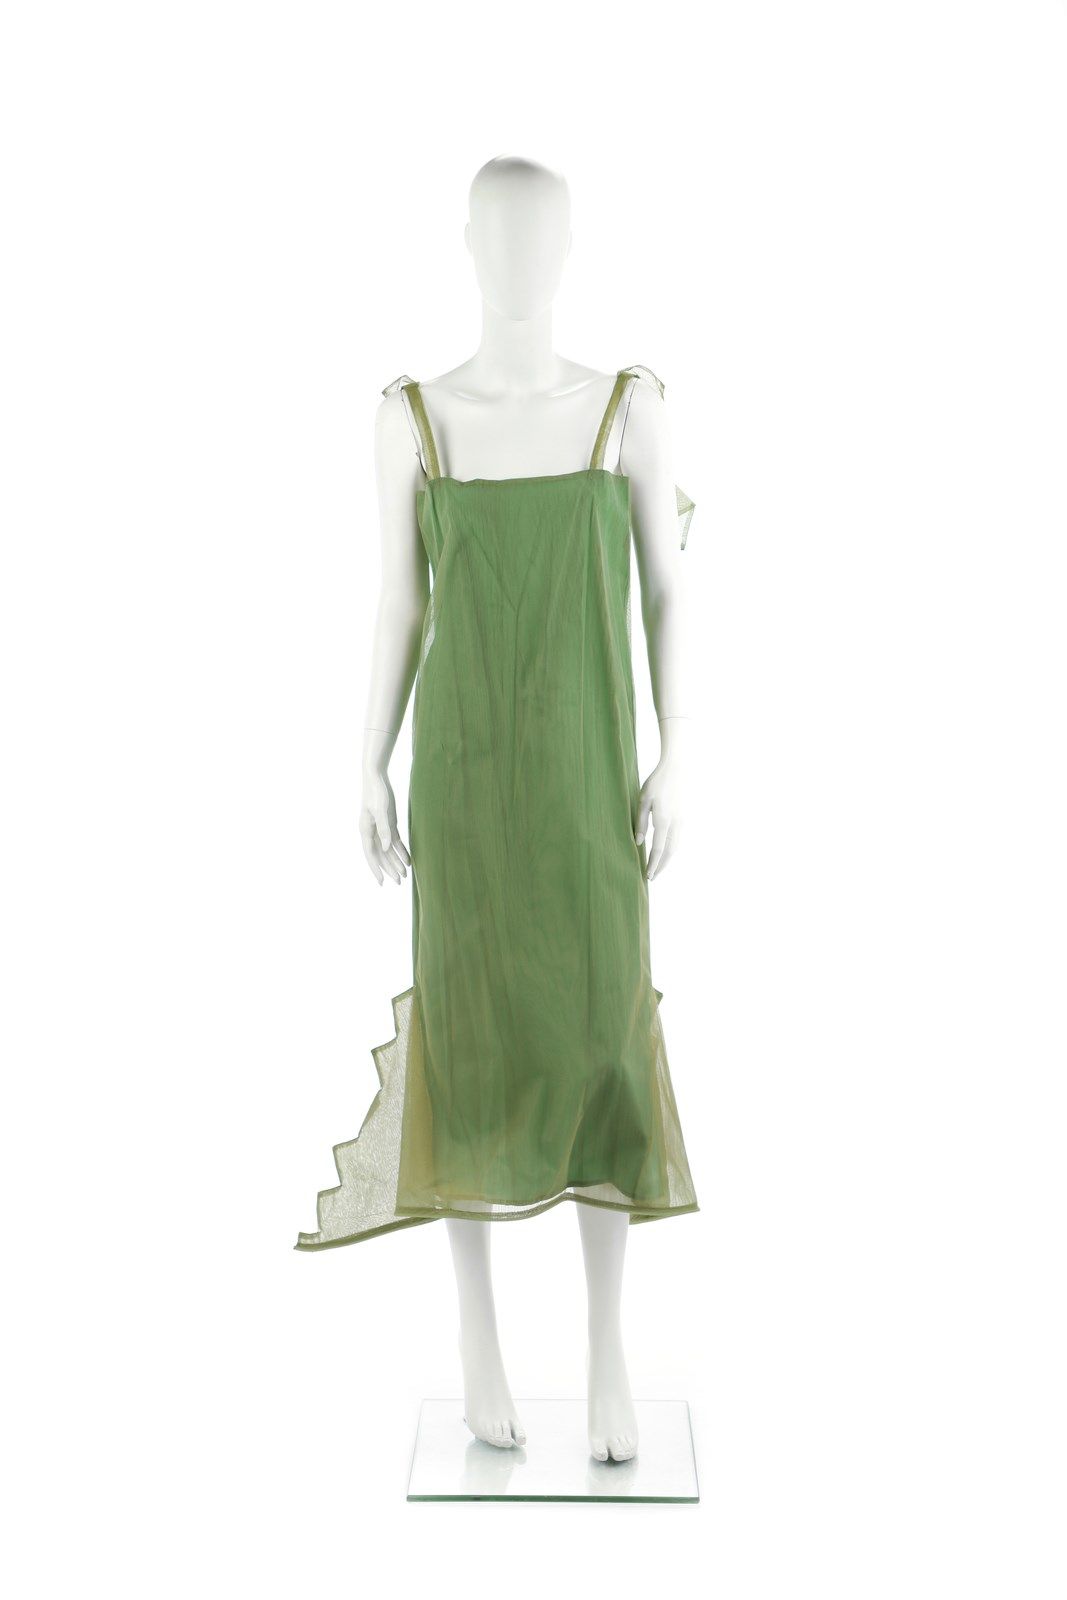 CINZIA RUGGERI Longuette dress in silk crepe de chine, grass green, square neckl&hellip;